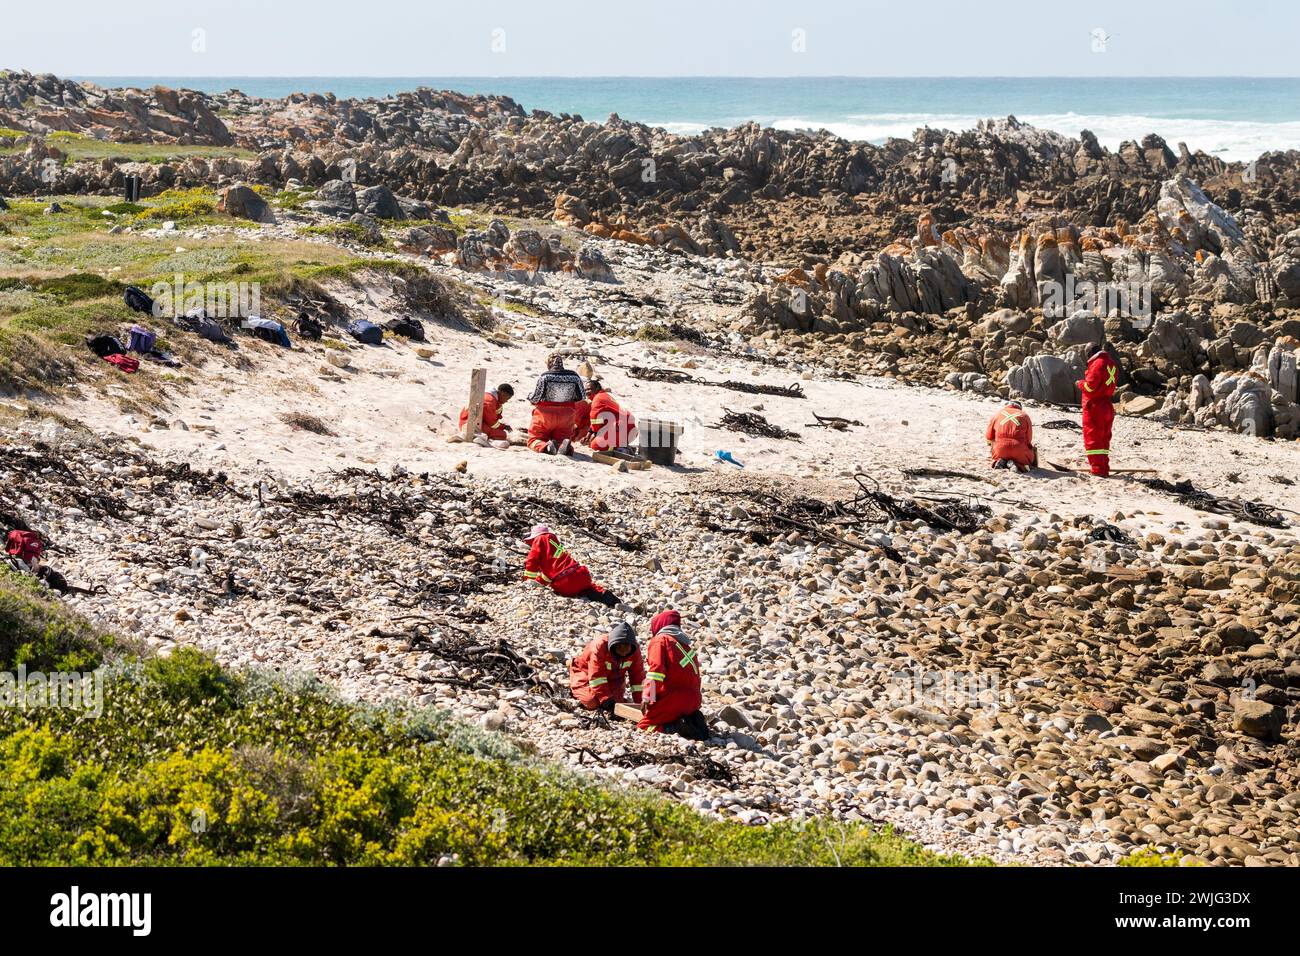 Pulizia delle spiagge, conservazione ambientale delle aree costiere da parte di un gruppo di persone o lavoratori municipali che indossano tute a Western Cape, Sud Africa Foto Stock